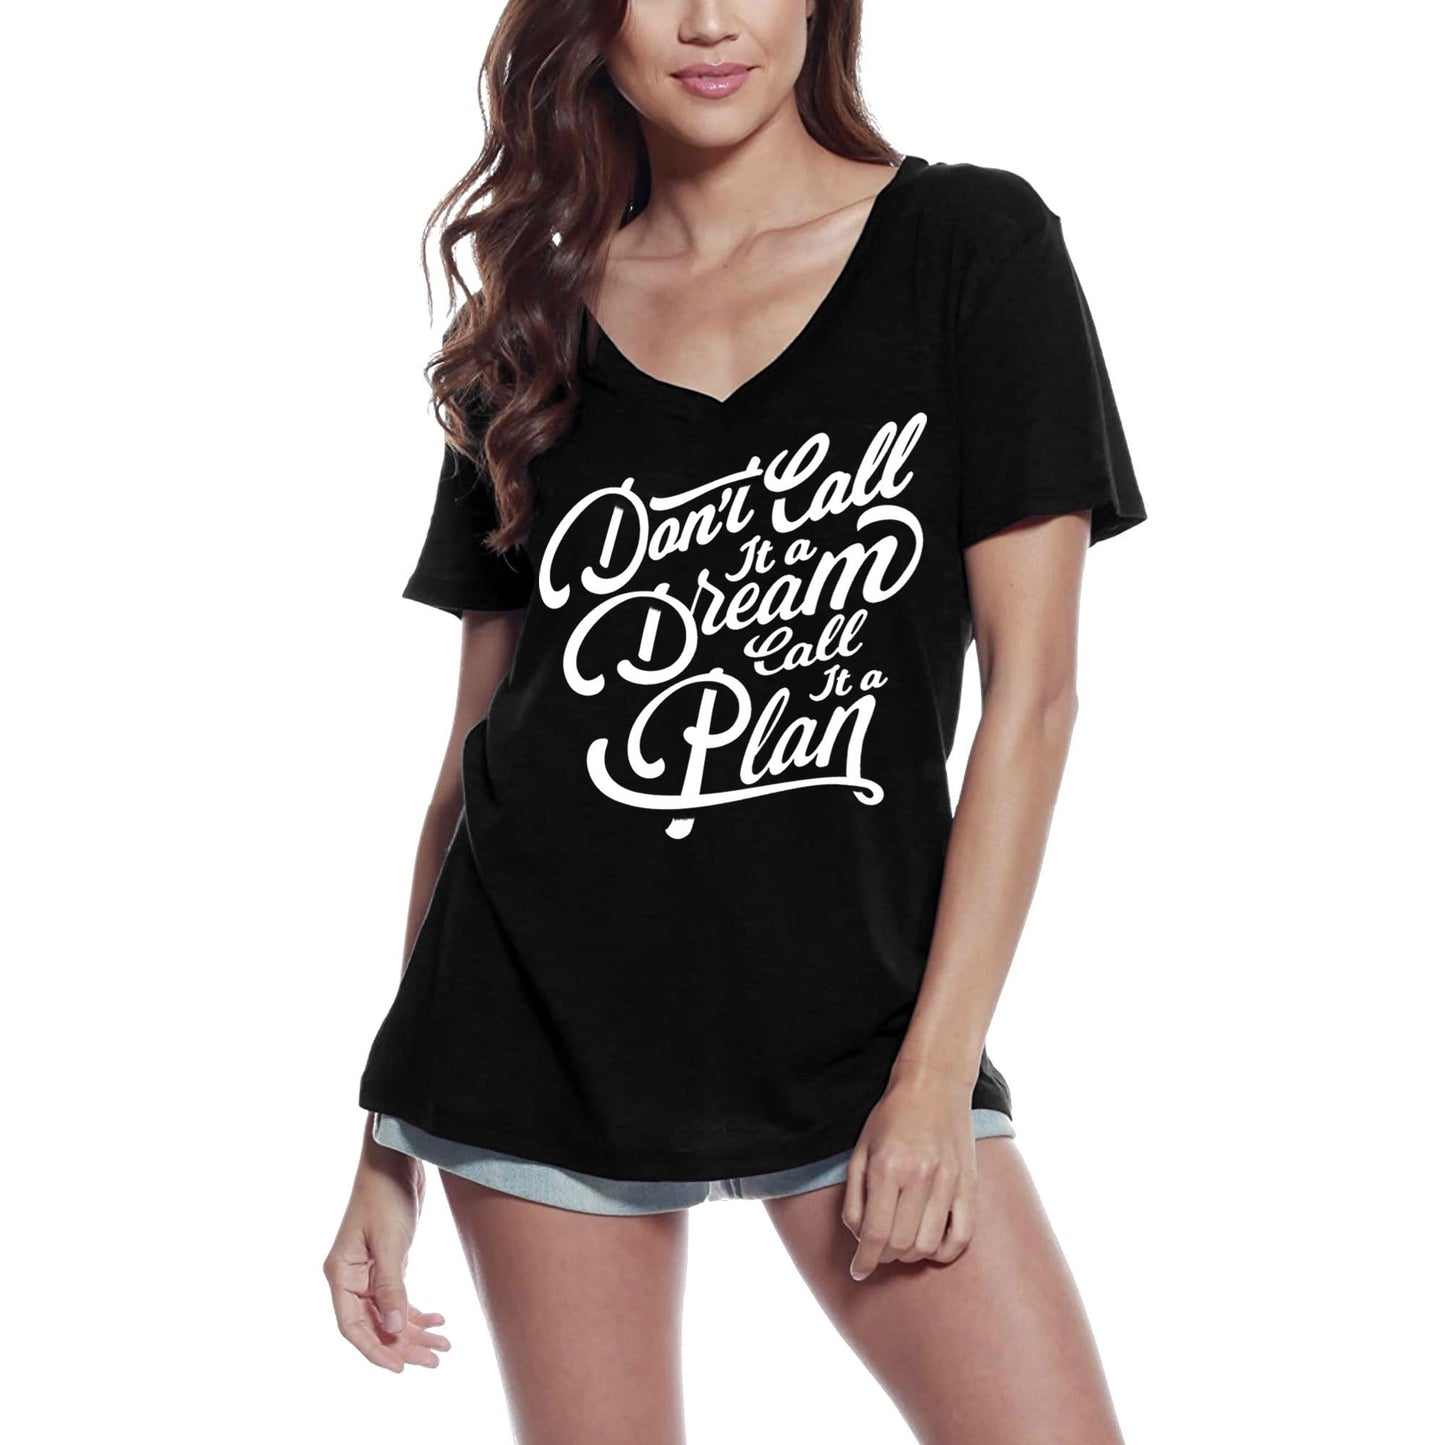 ULTRABASIC Women's T-Shirt Don't Call It a Dream - Motivational Slogan Tee